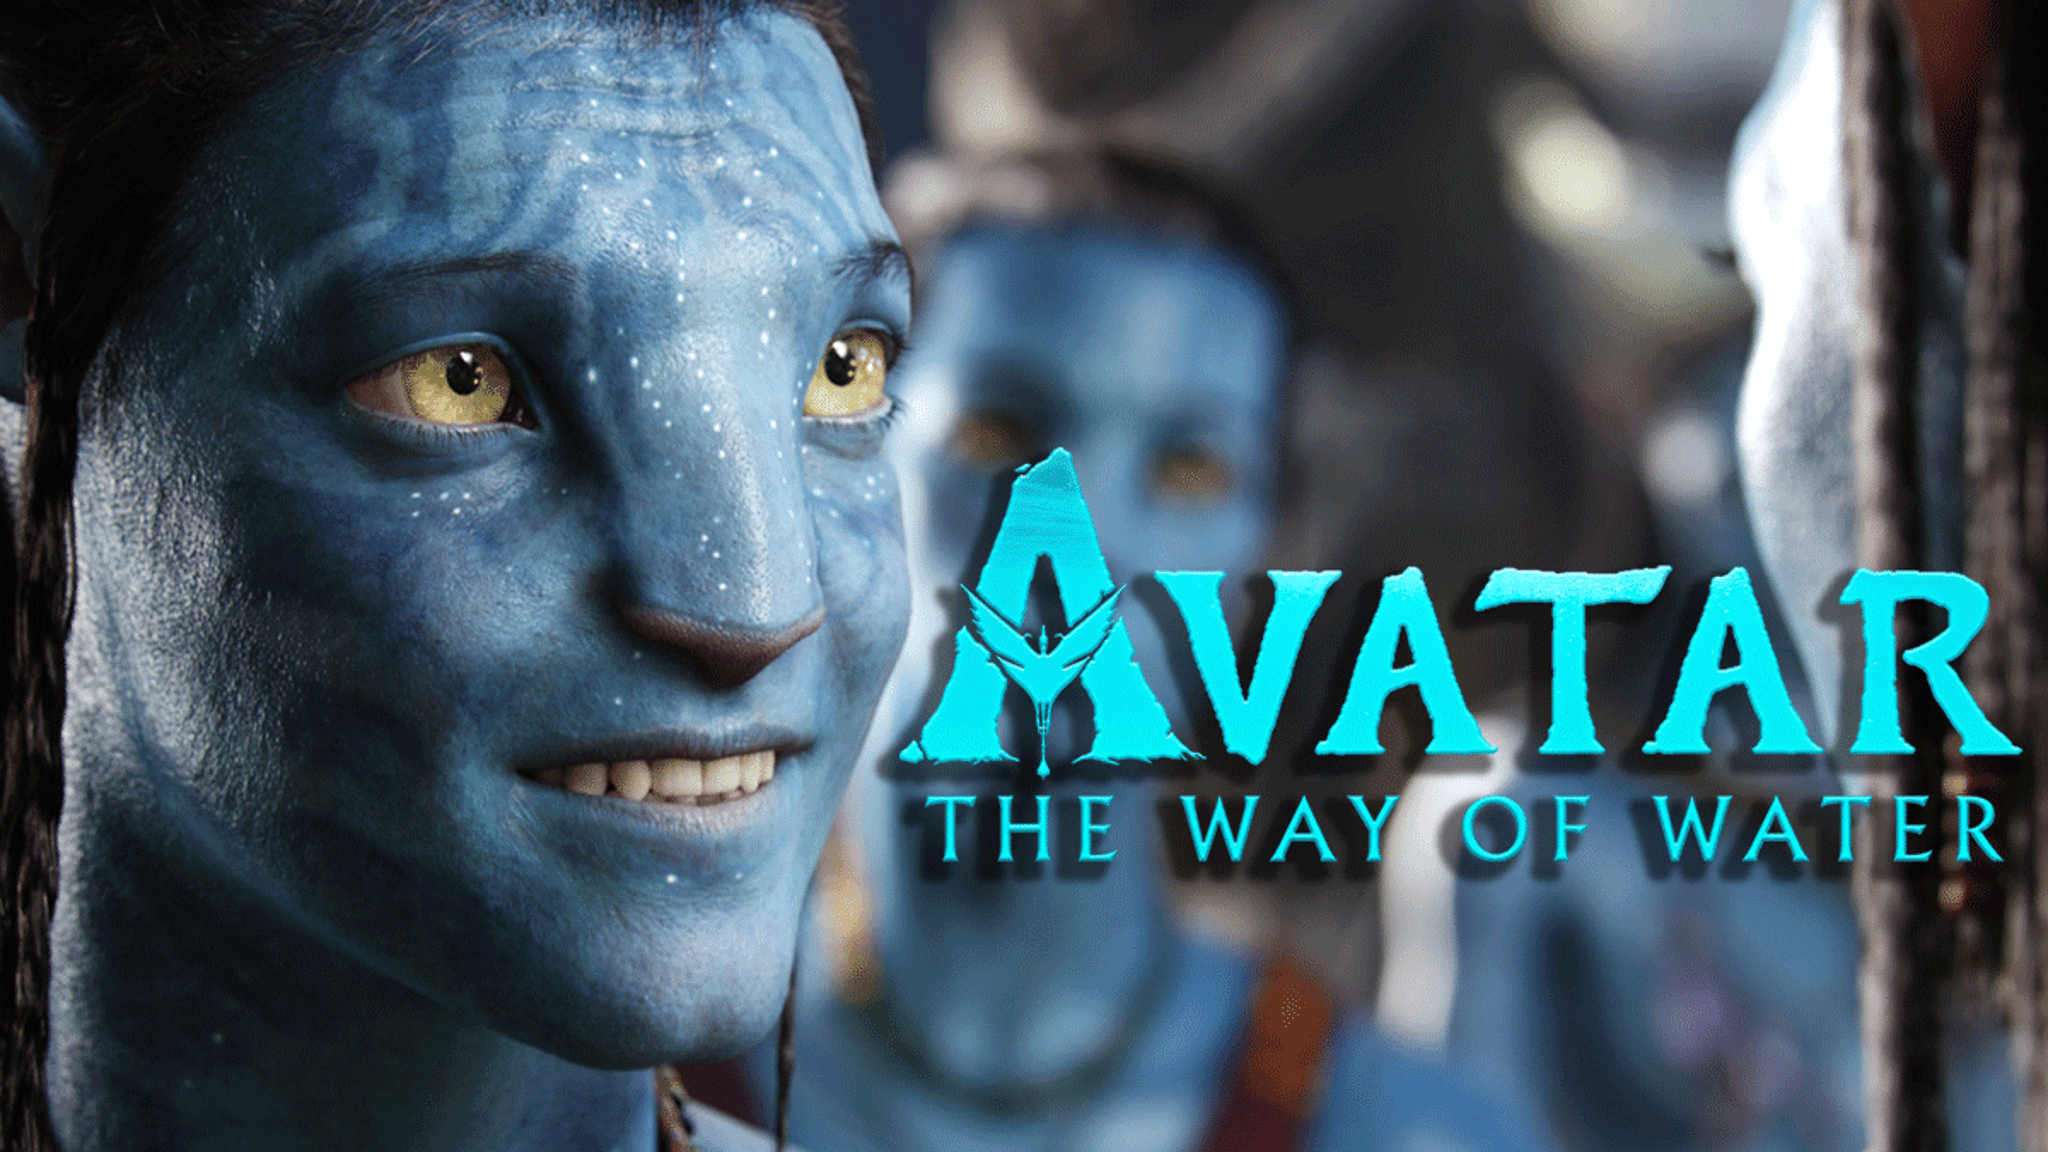 Le box-office d’ouverture de “Avatar” est fort, mais toujours sous-performant